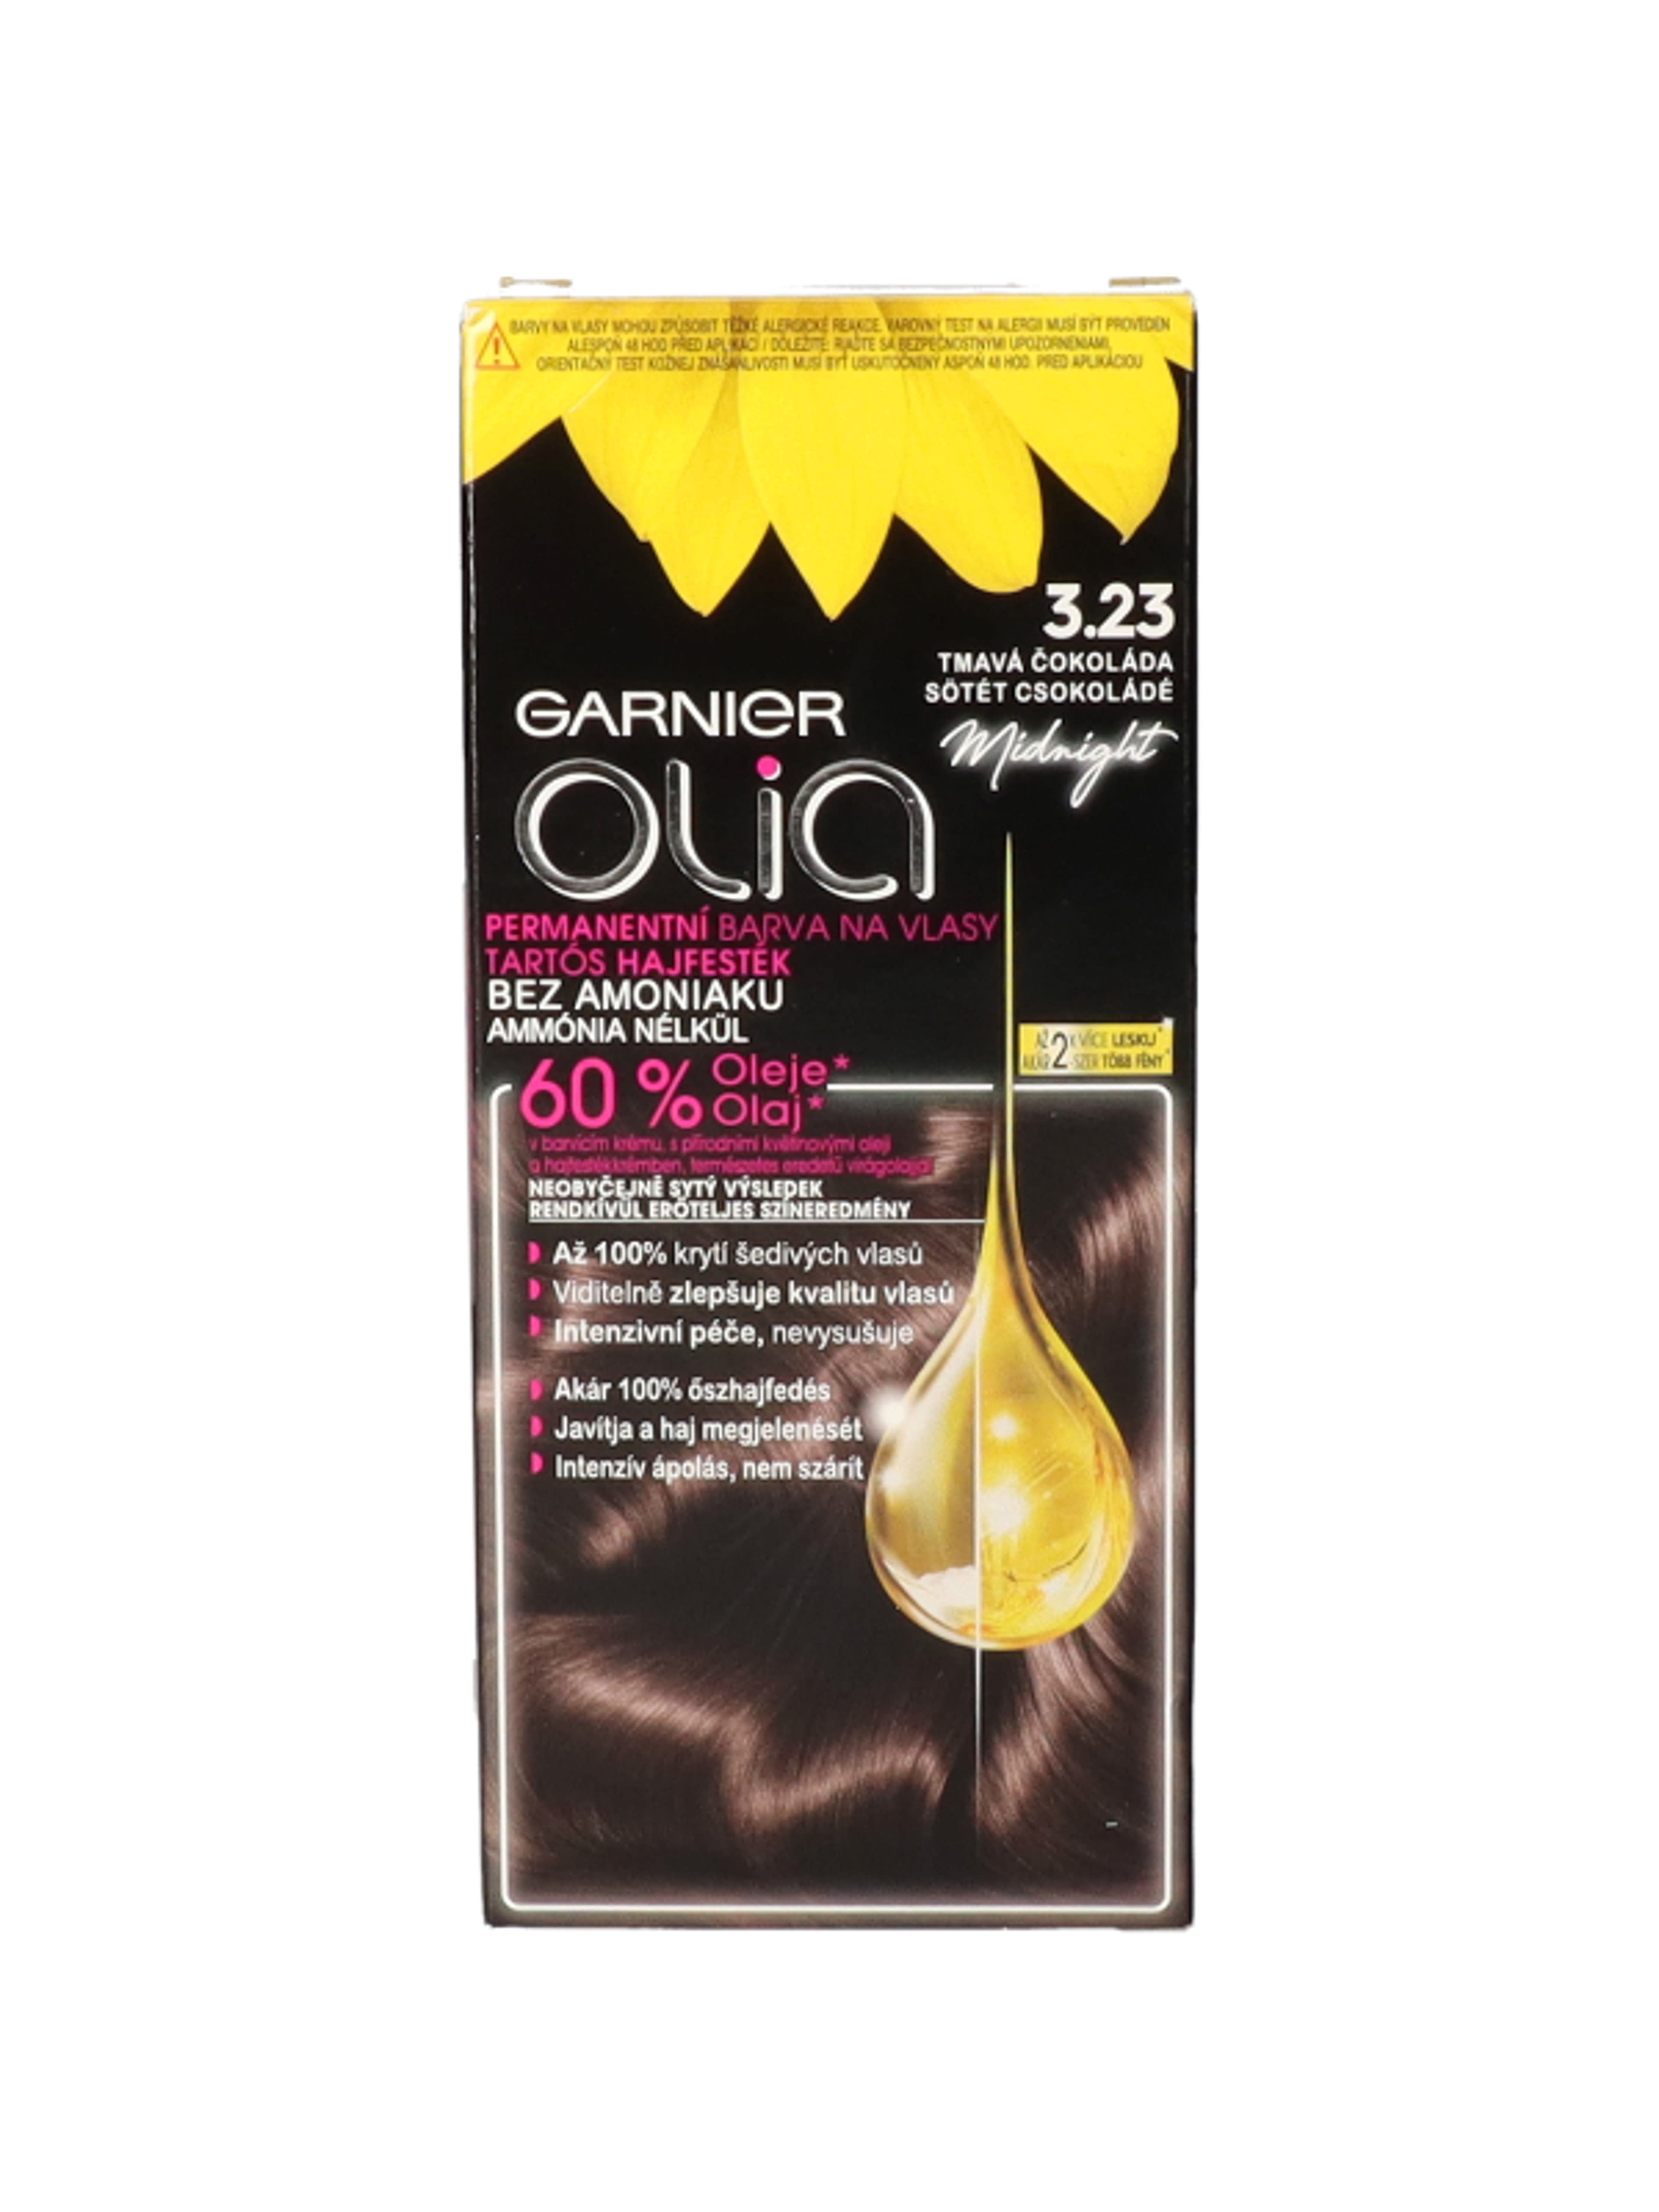 Garnier Olia tartós hajfesték 3.23 Sötét csokoládé - 1 db